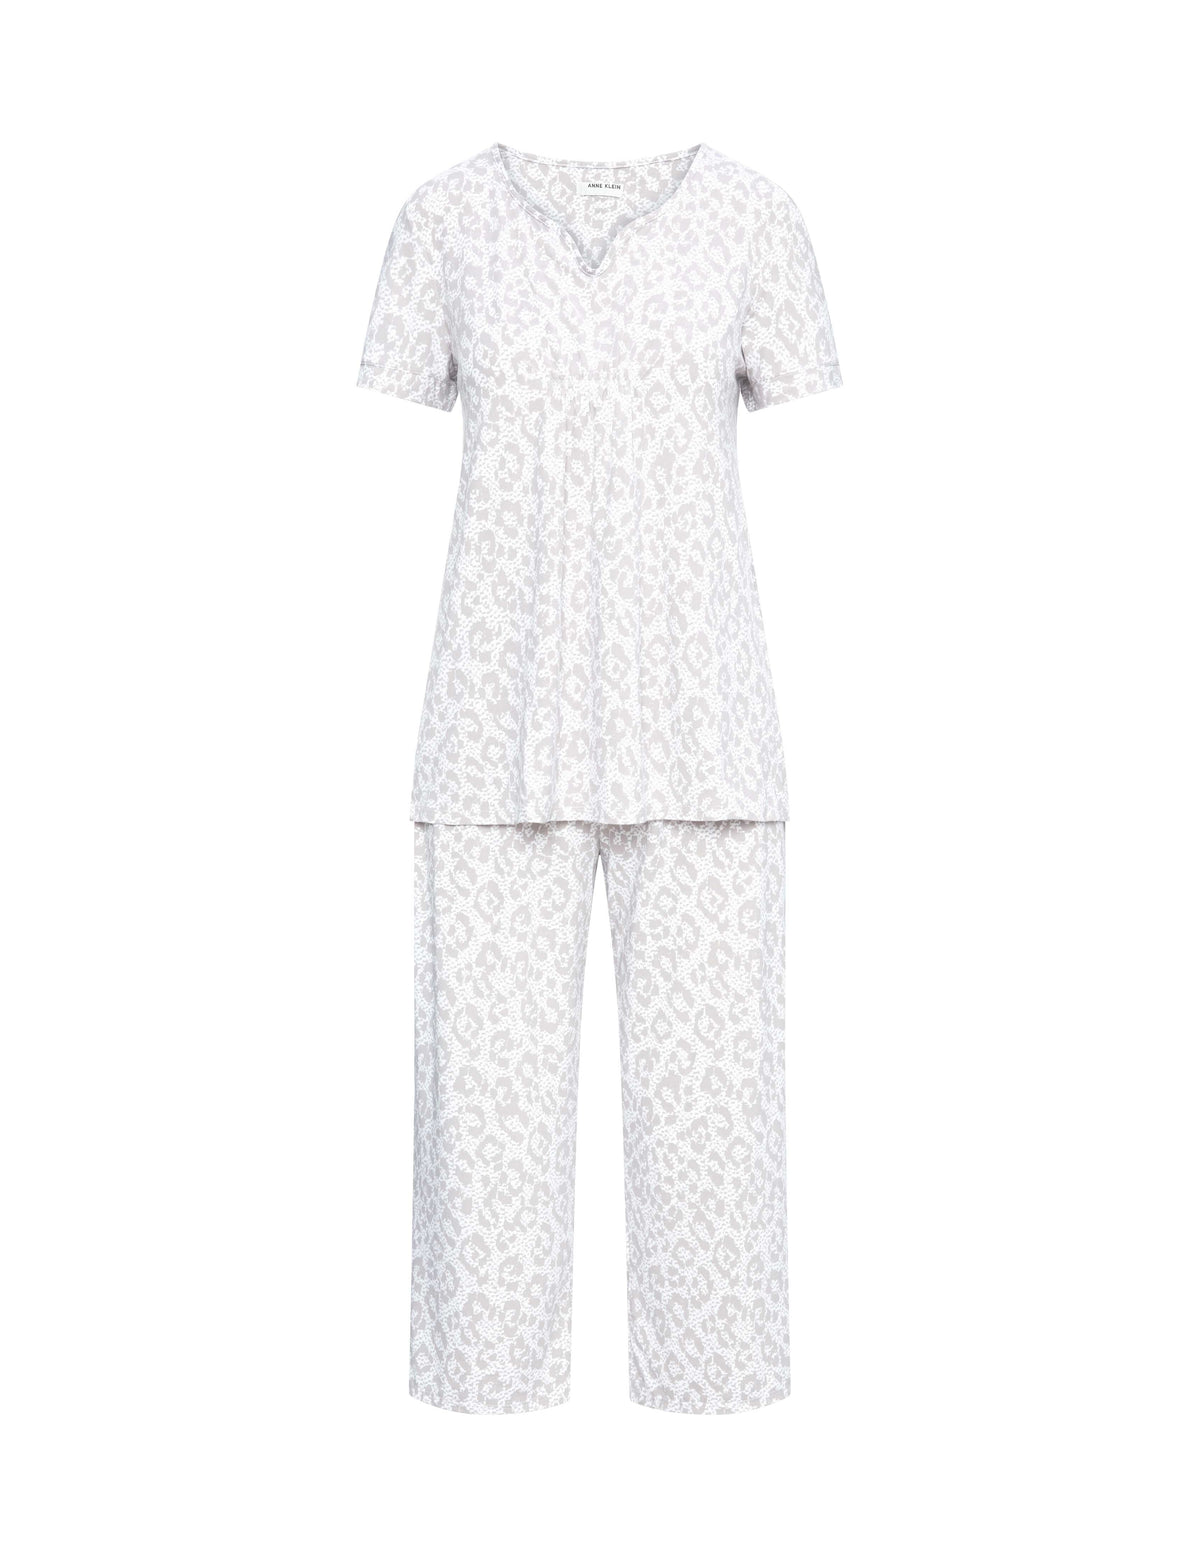 Short Sleeve Print Capri Pajama